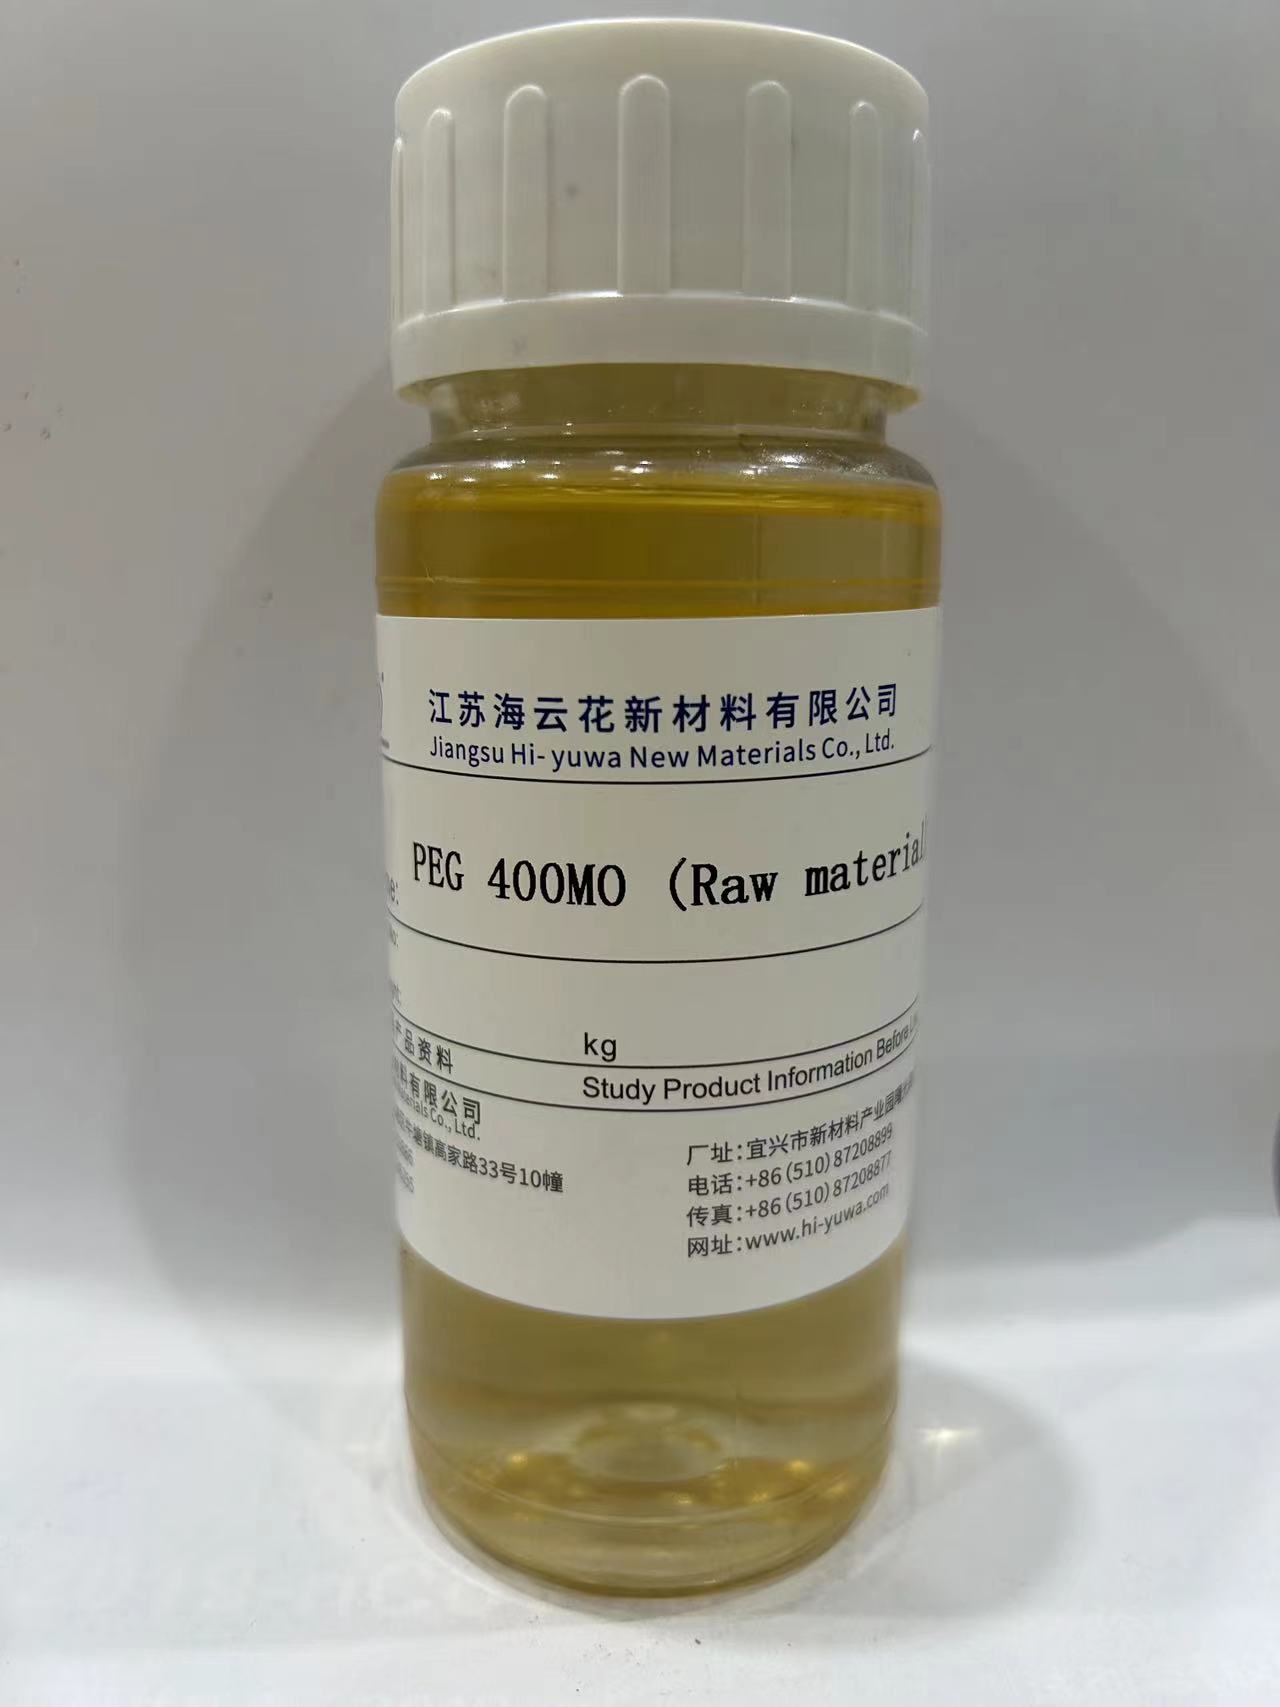 Polyethylene glycol oleate PEG 400MO